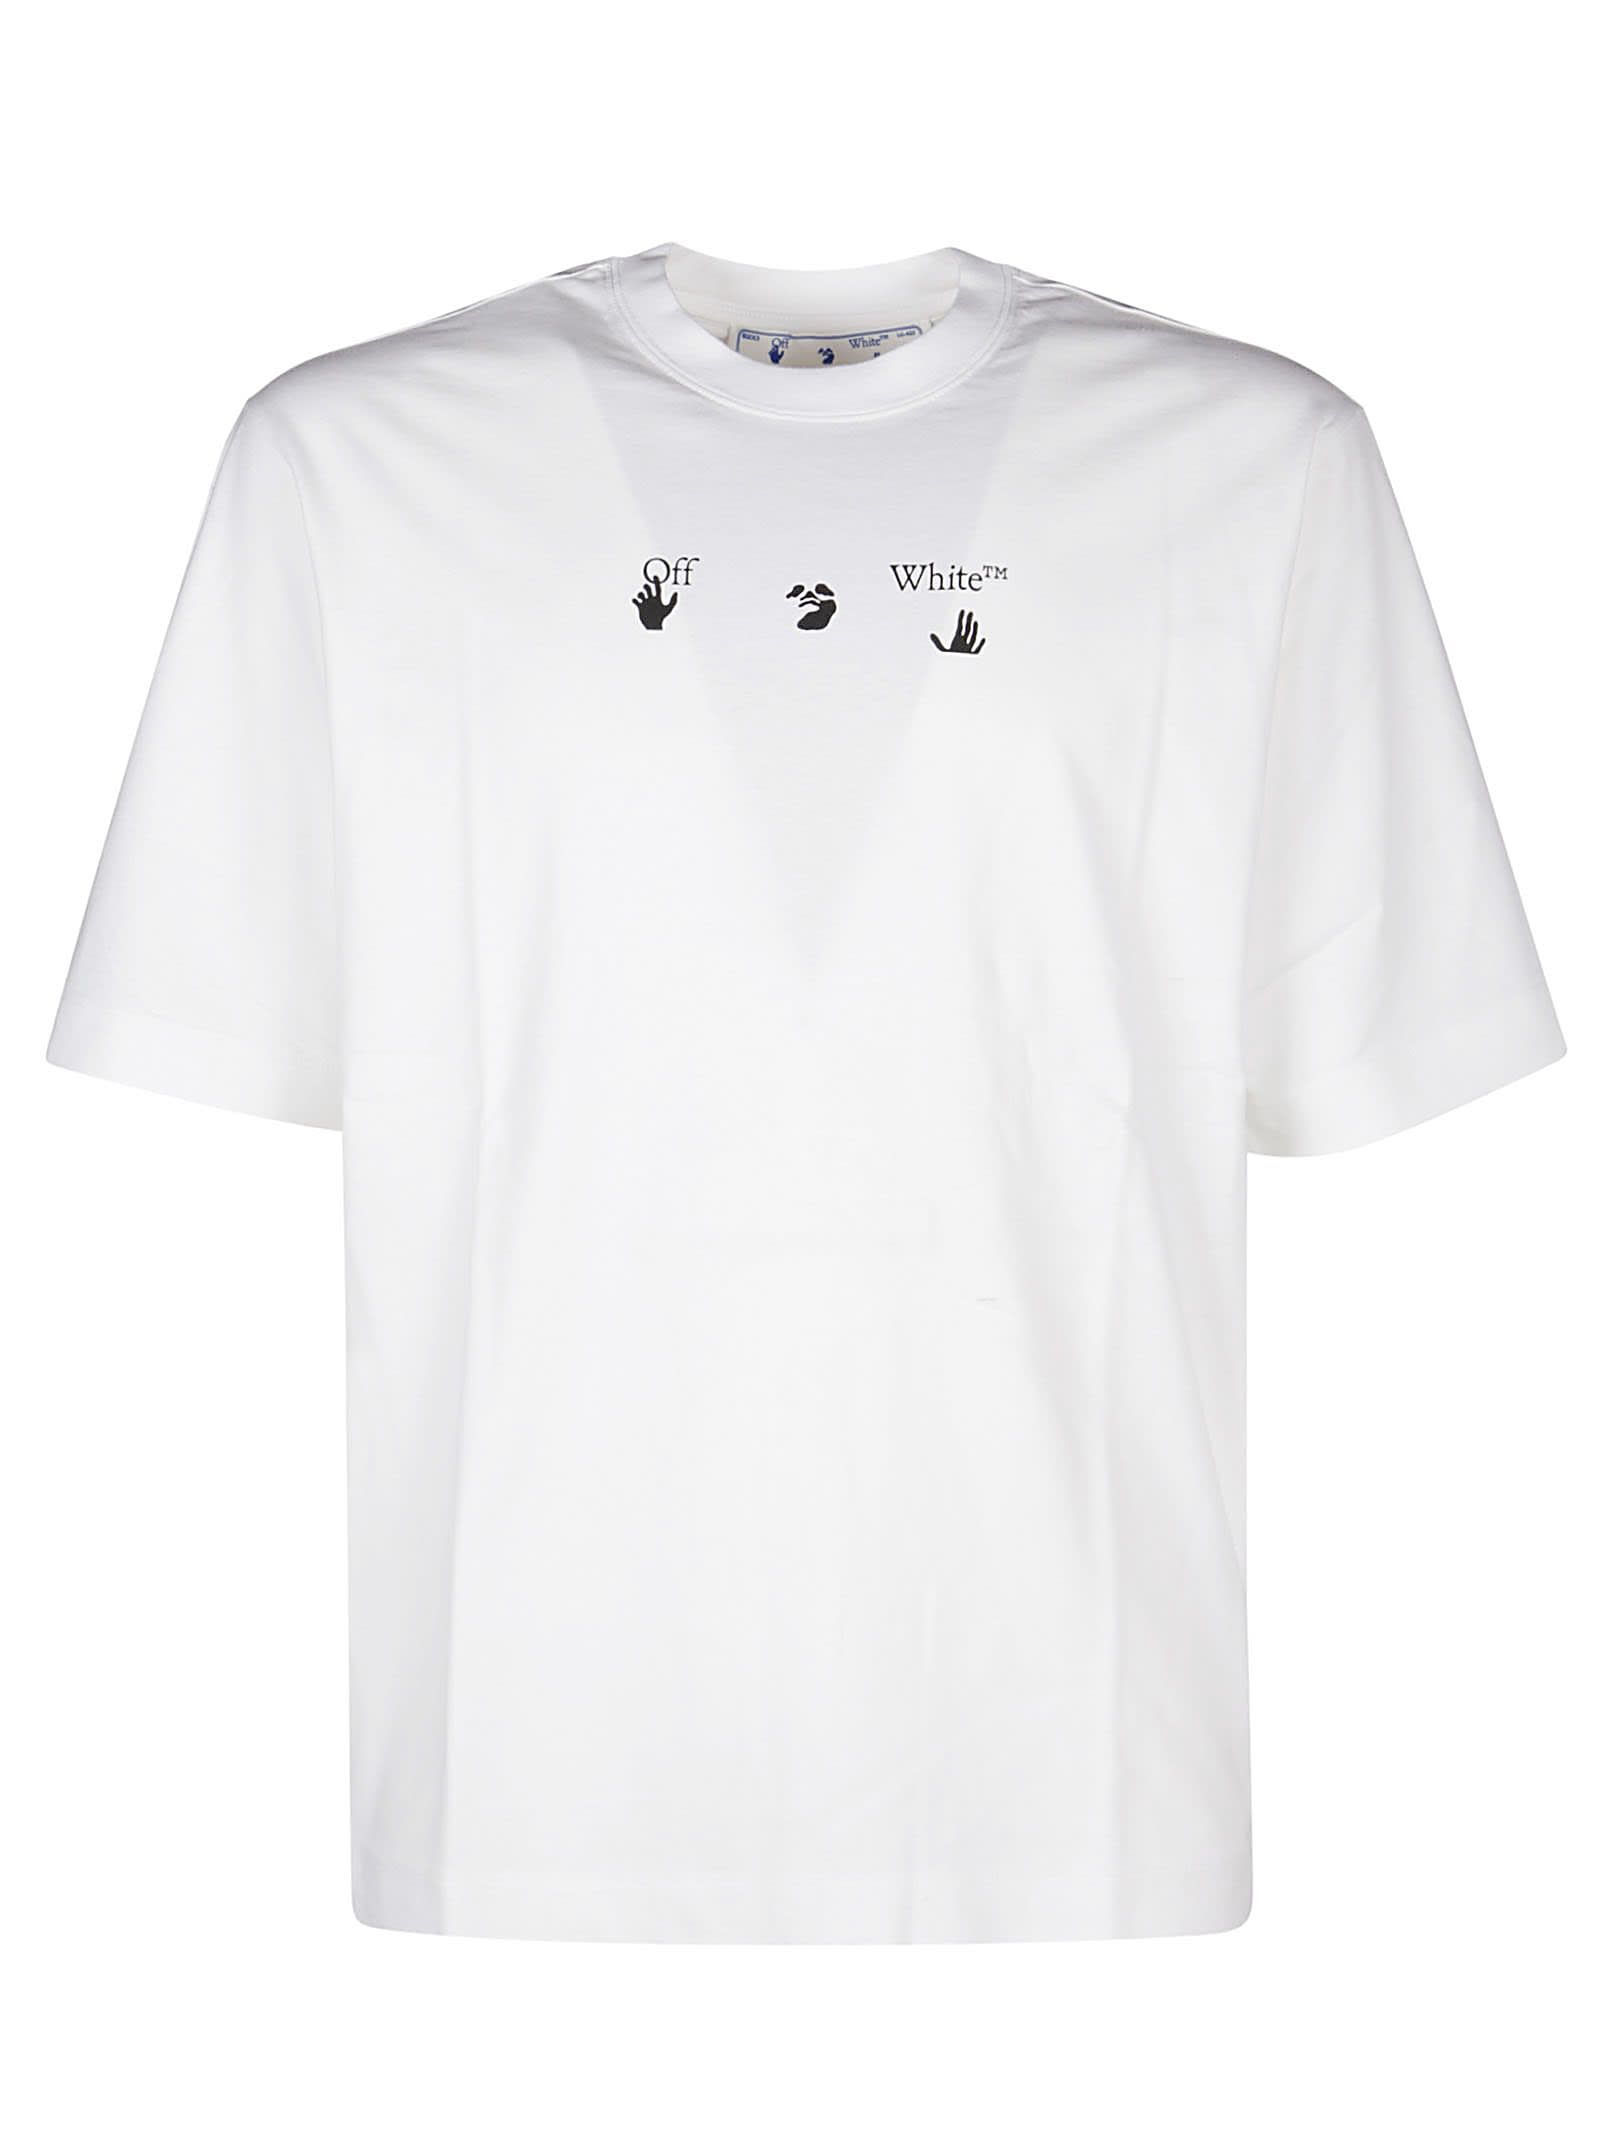 Off-White Spray Marker Skate T-shirt